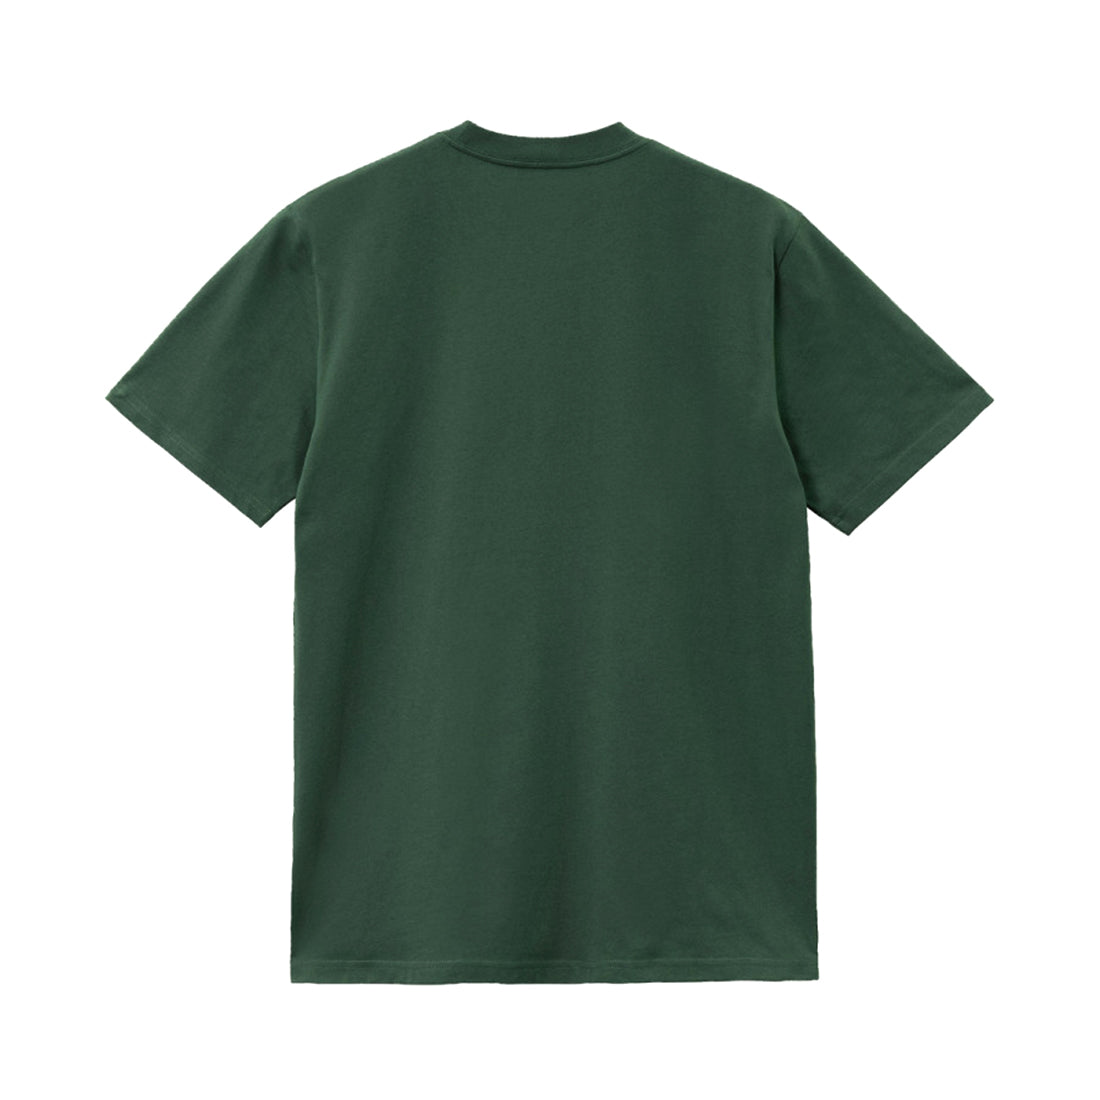 S/S Marlin T-Shirt Treehouse